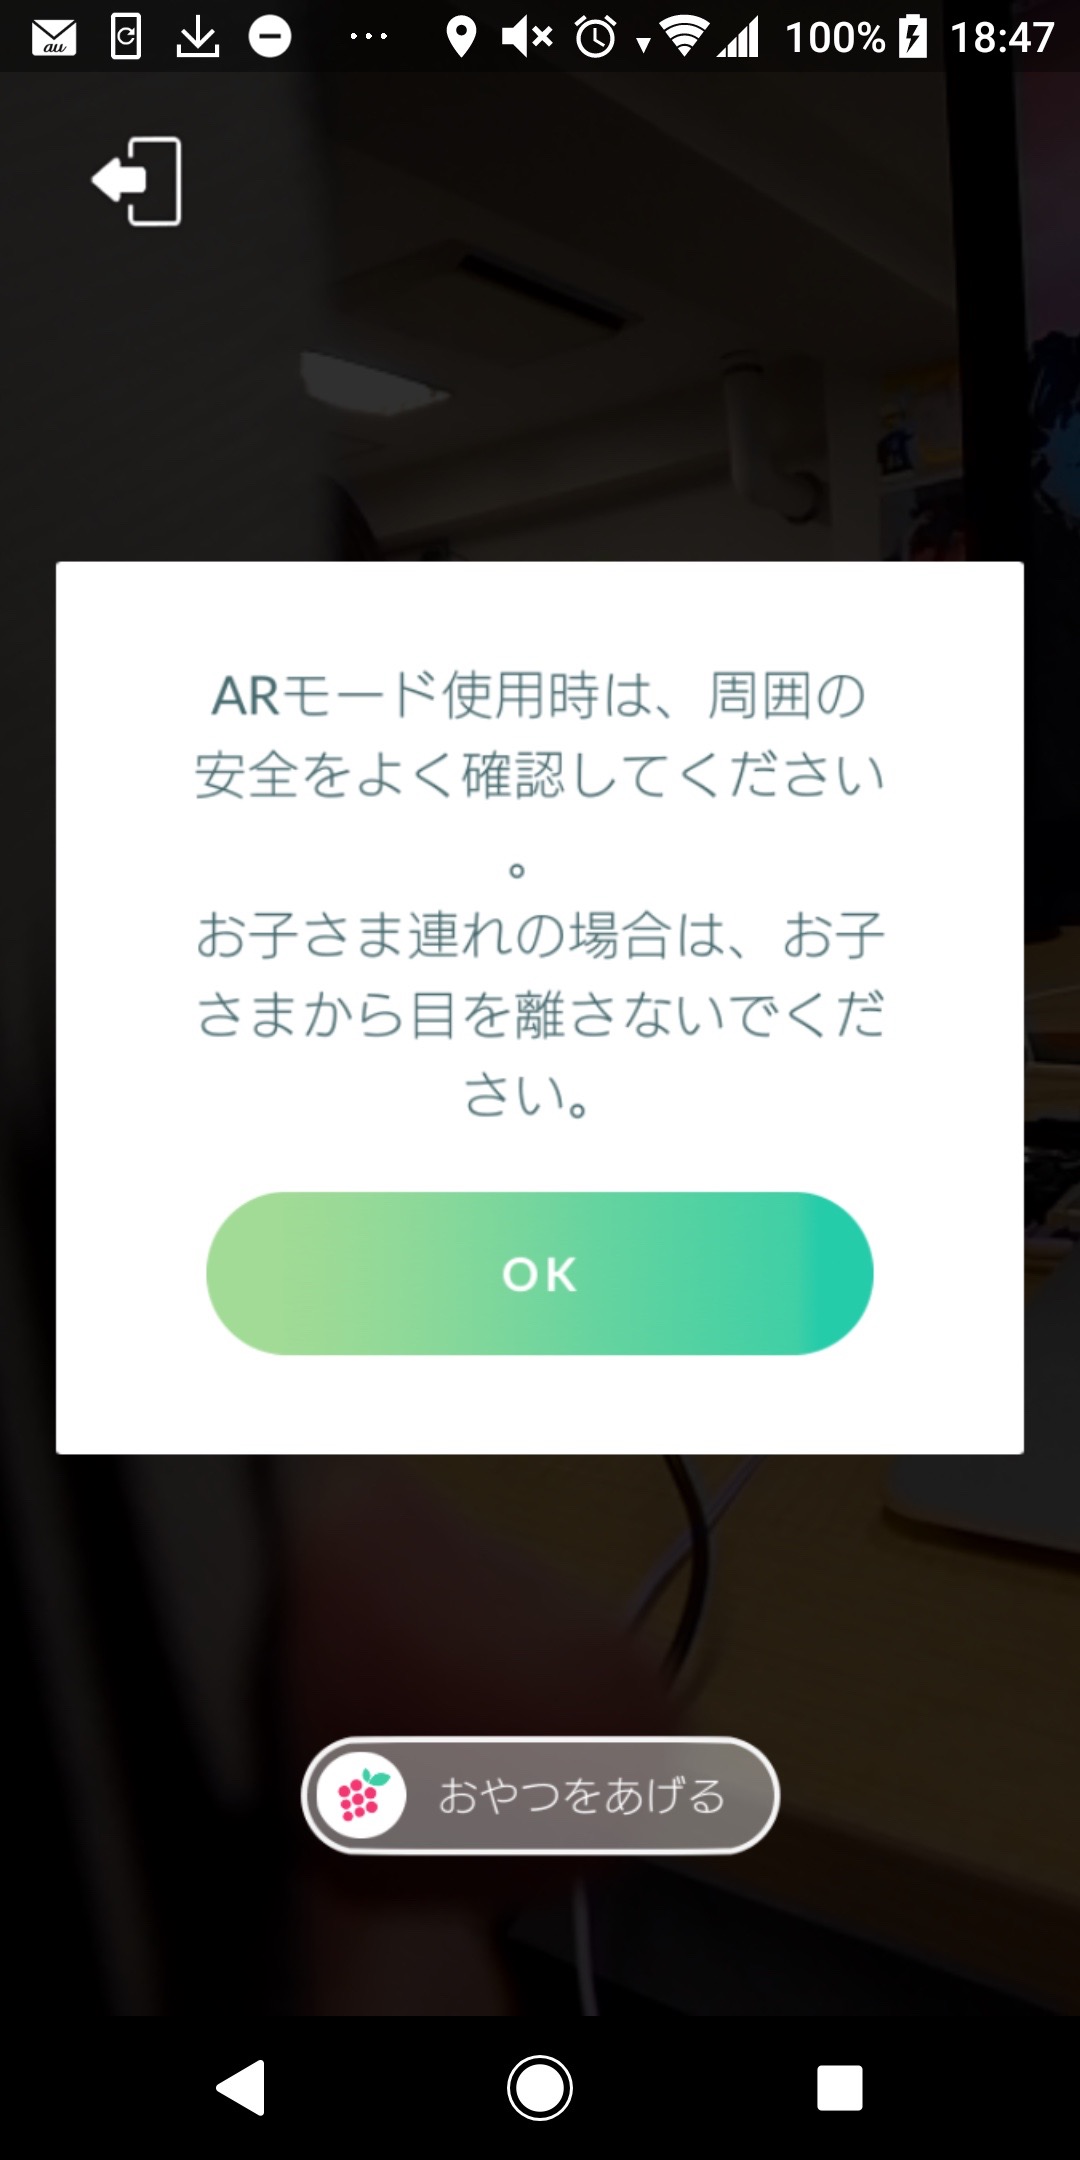 ポケモンgo Androidのar画面で相棒と遊ぶとアプリが落ちる 症状と対策を紹介 Appbank